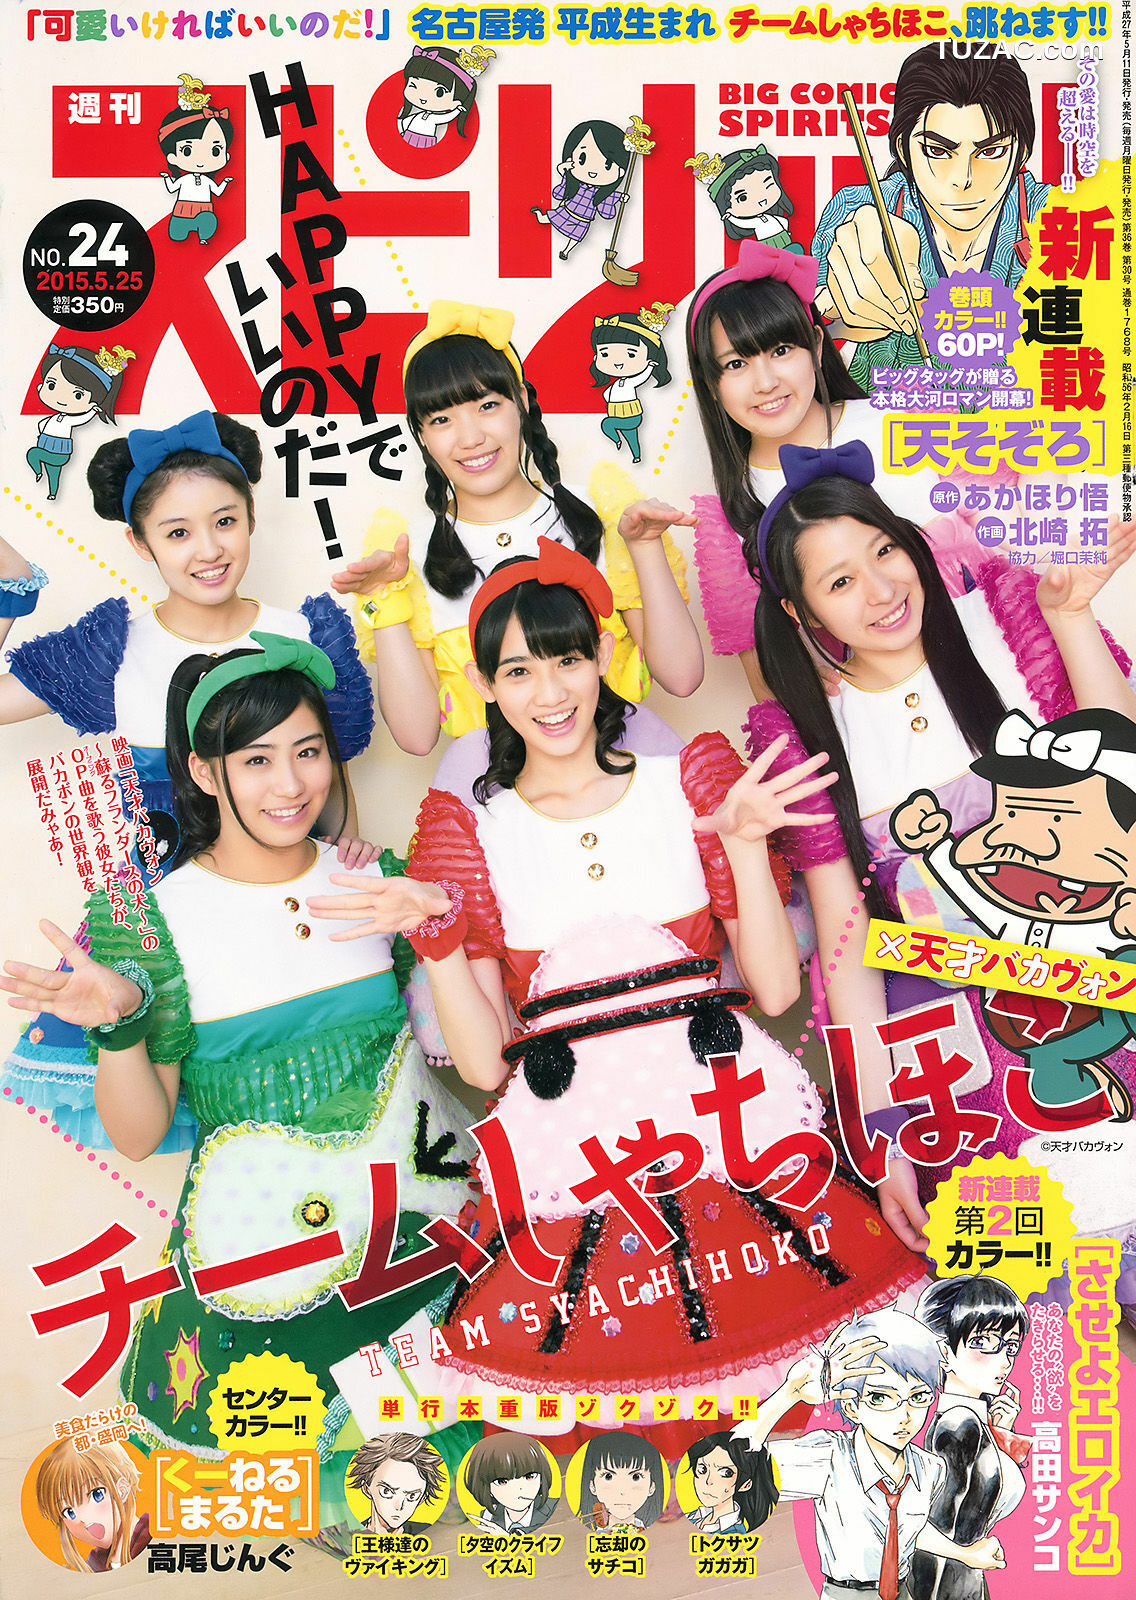 Weekly Big Comic Spirits杂志写真_ チームしゃちほこ 2015年No.24 写真杂志[7P]